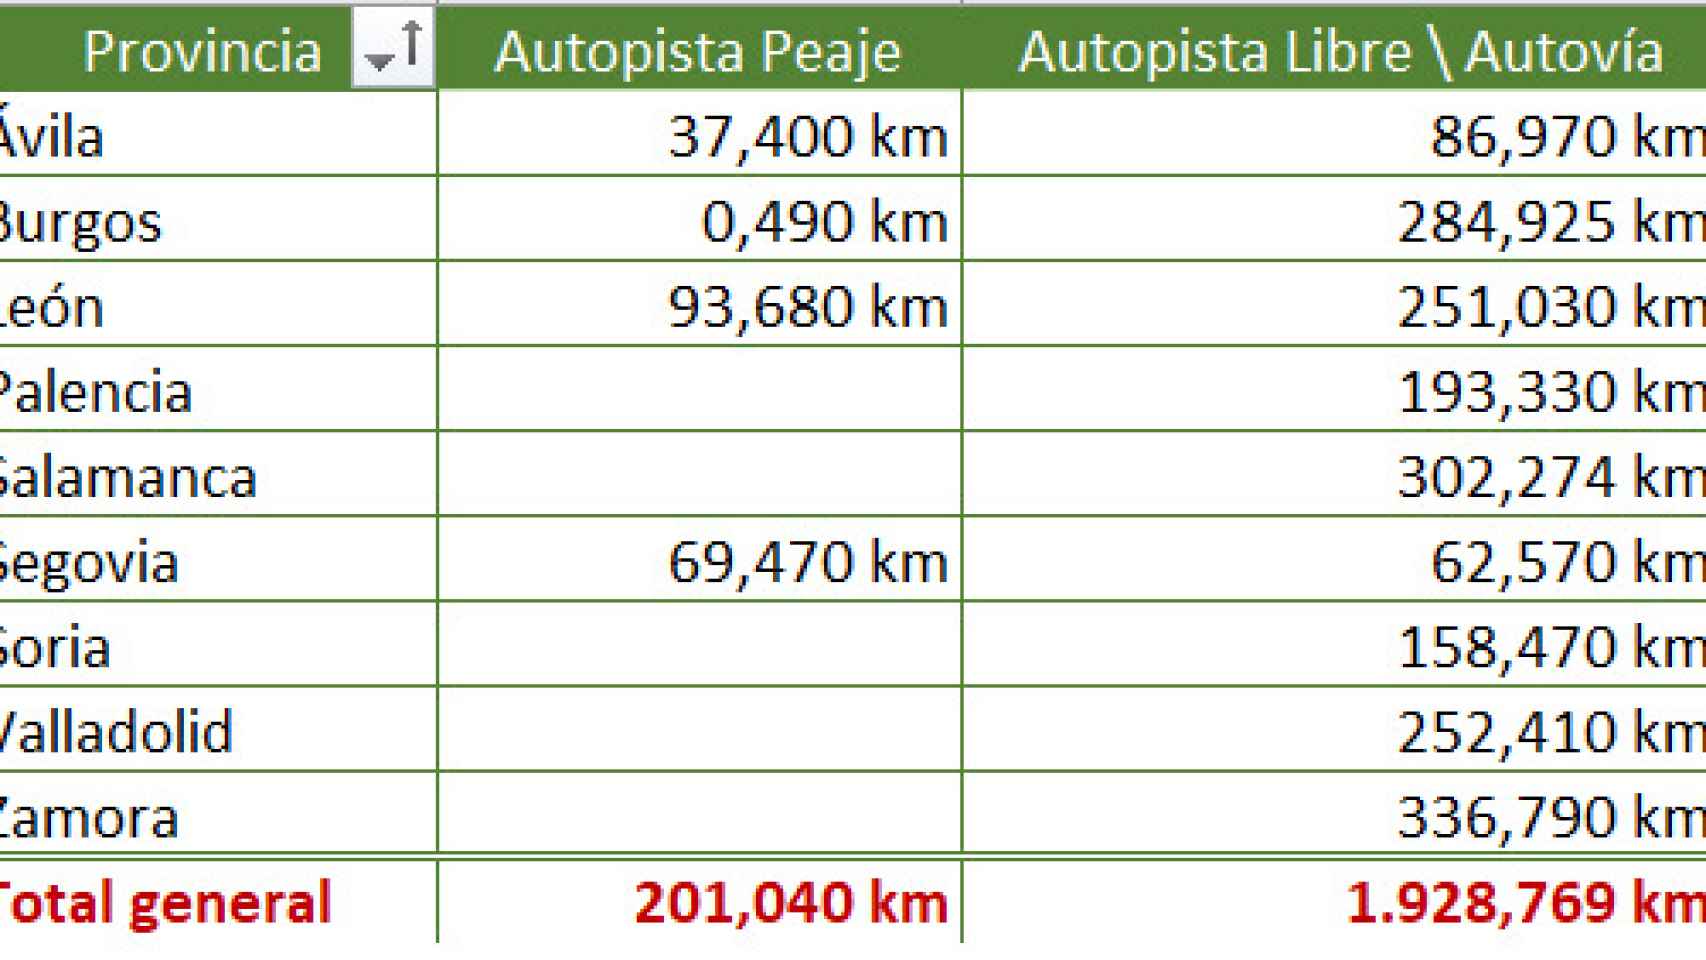 Kilómetros de autovía en las provincias de Castilla y León